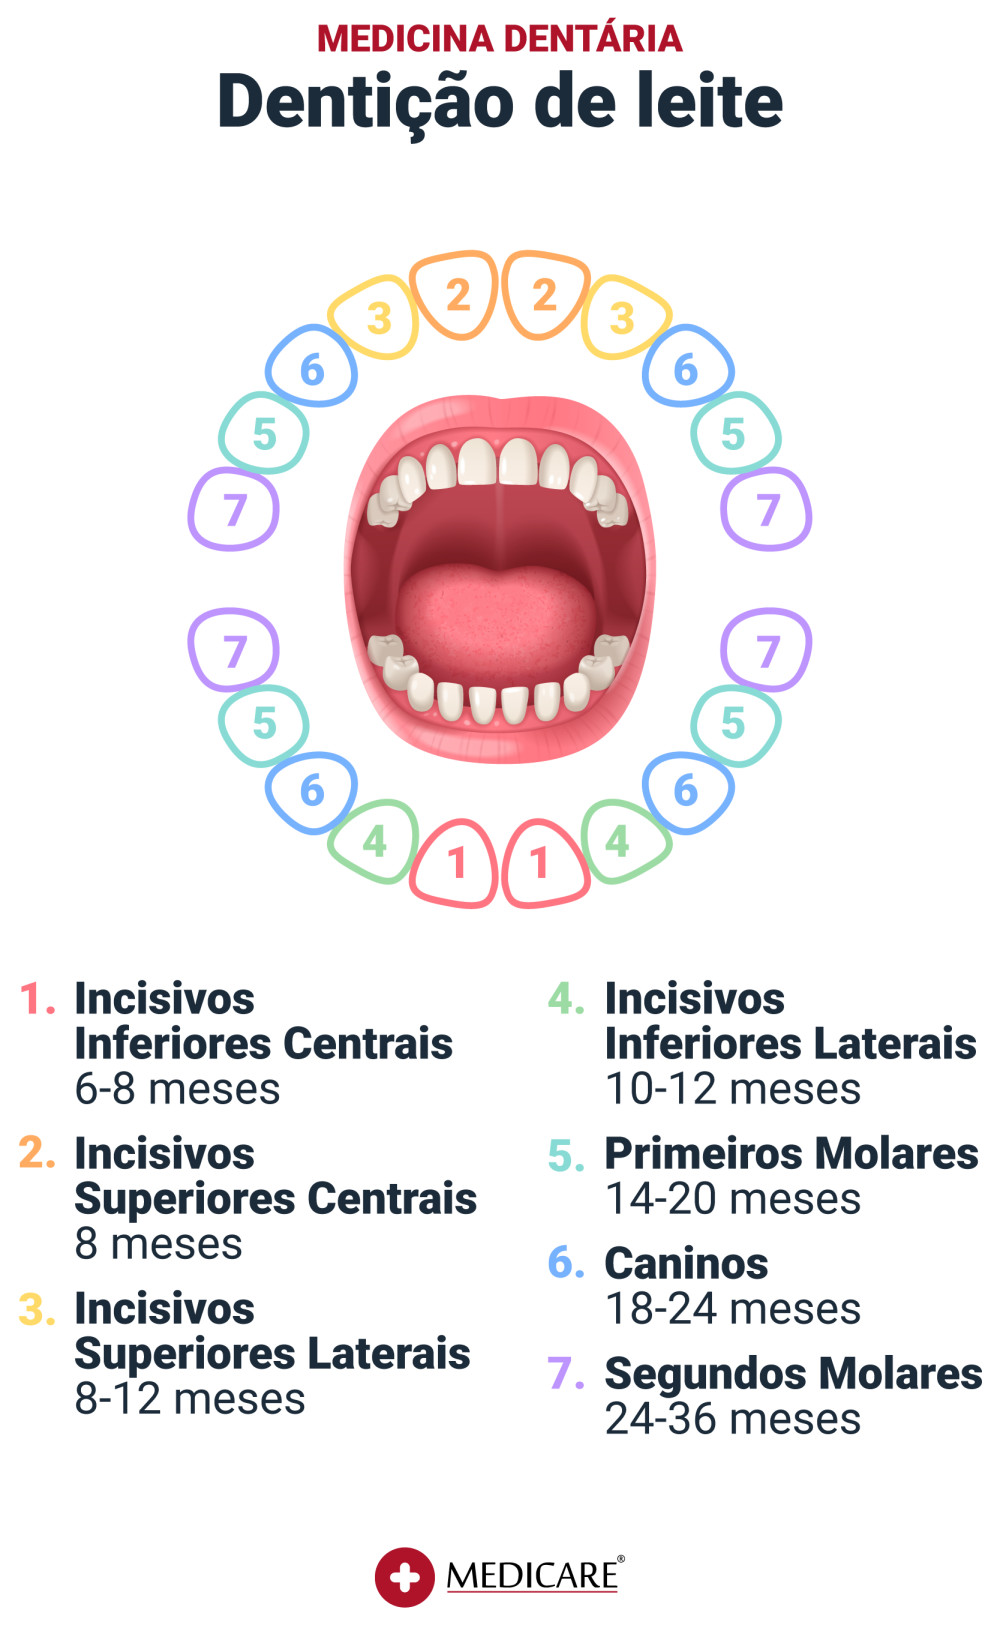 Dentição de Leite ou dentes decíduos